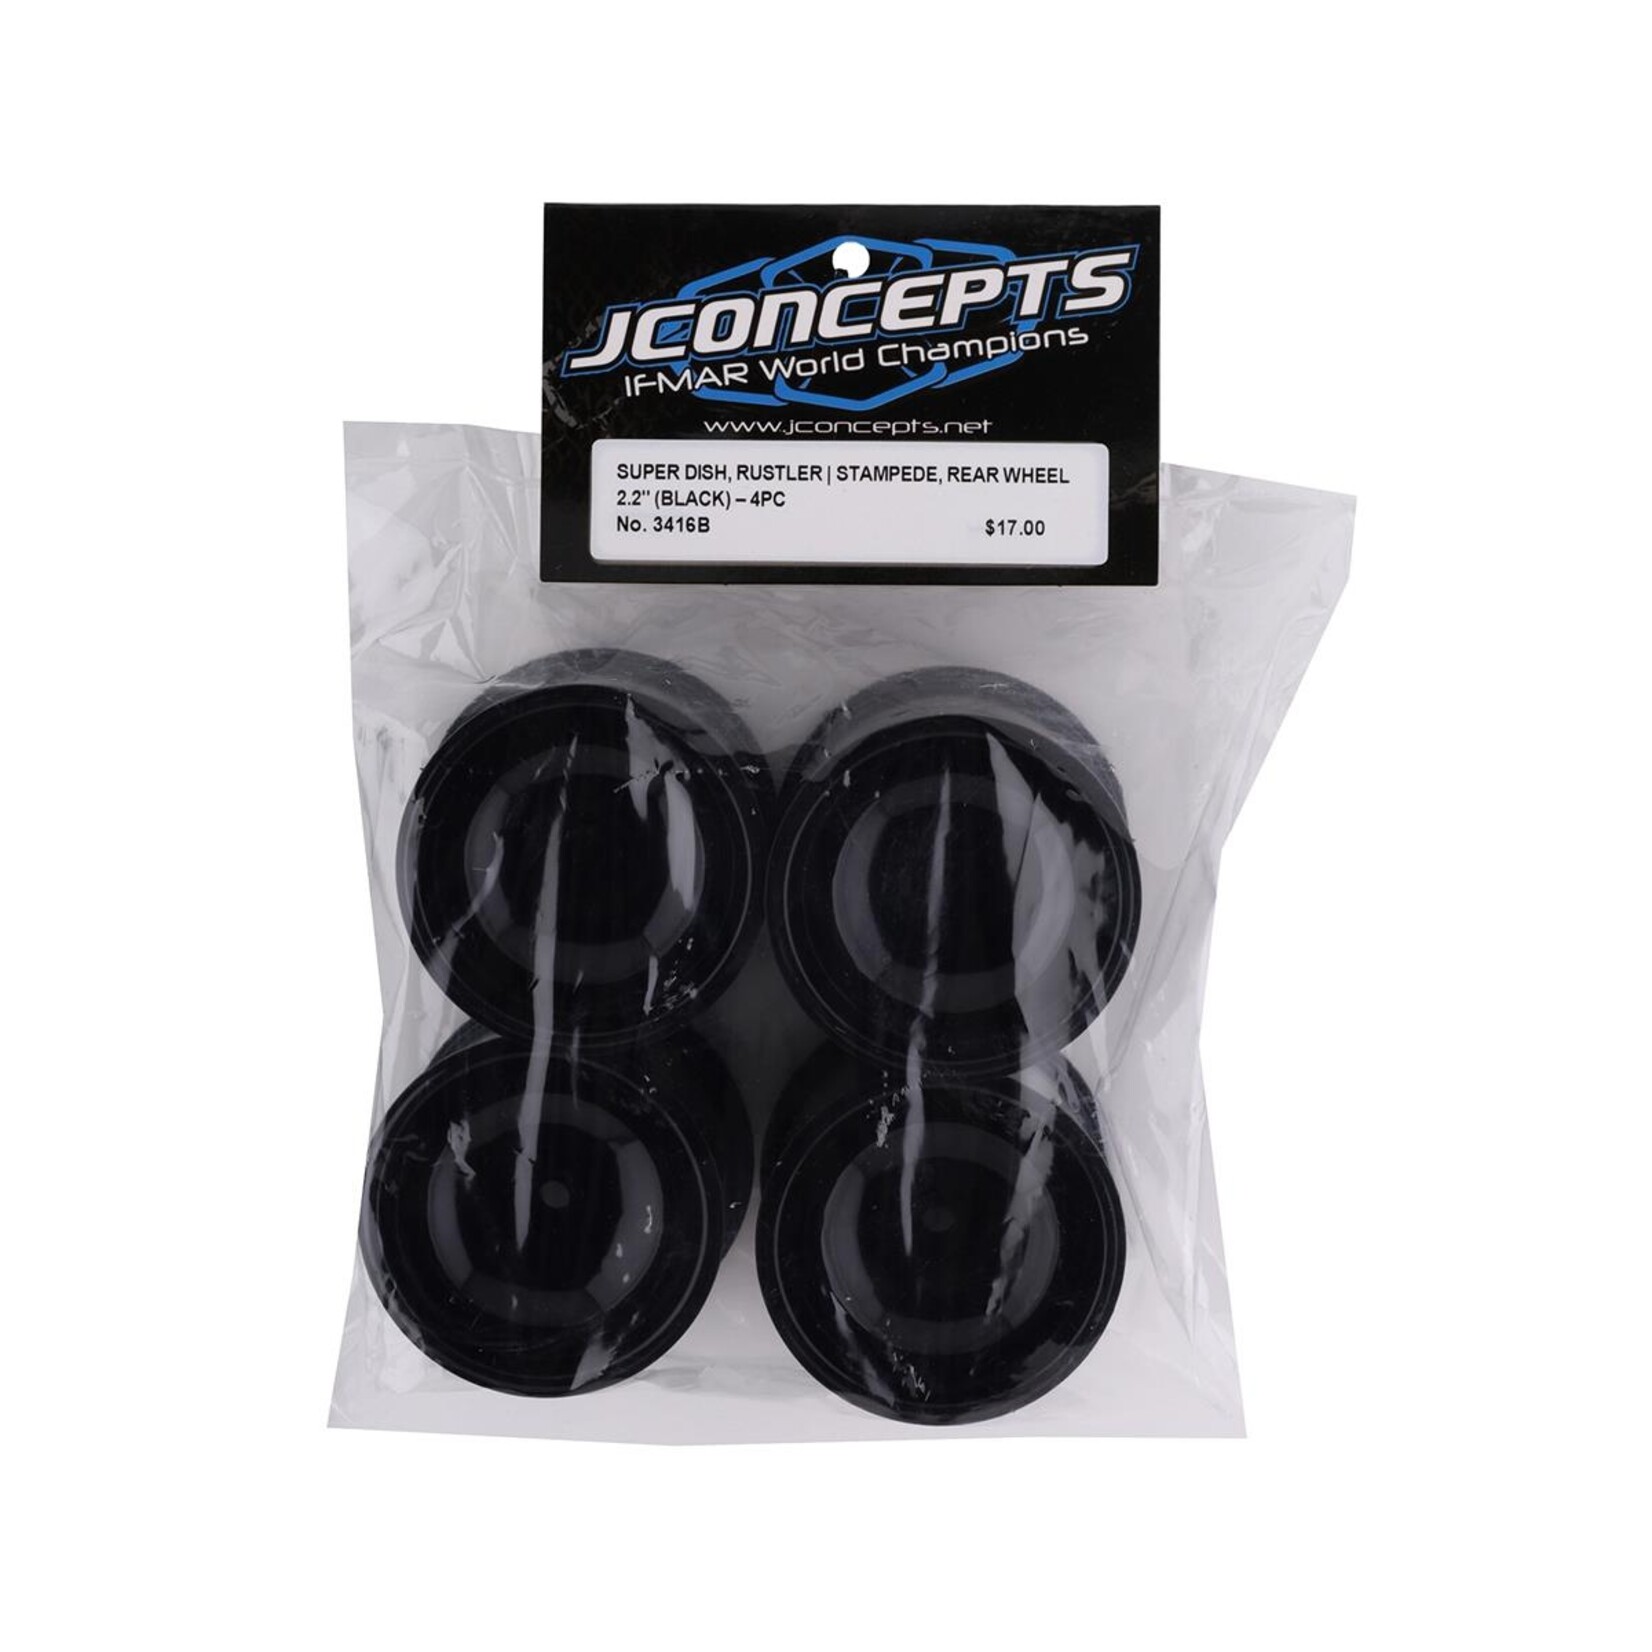 JConcepts JConcepts 12mm Hex 2.2" Super Dish Front Wheel (Black) (4) (Rustler/Stampede) #3416B